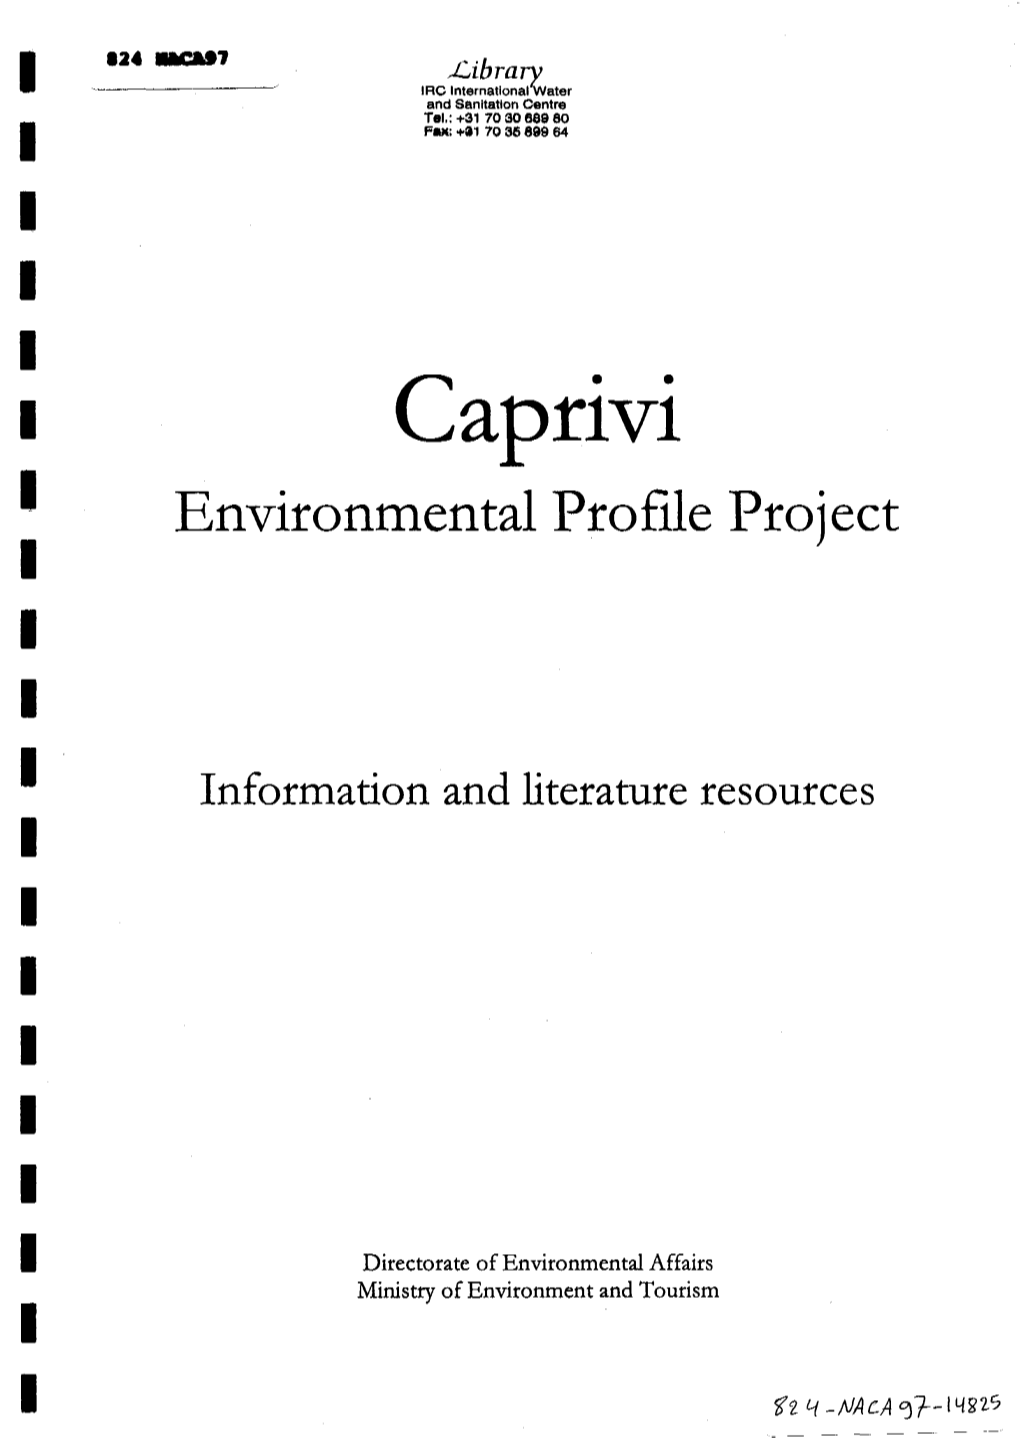 Caprivi Environmental Profile Project